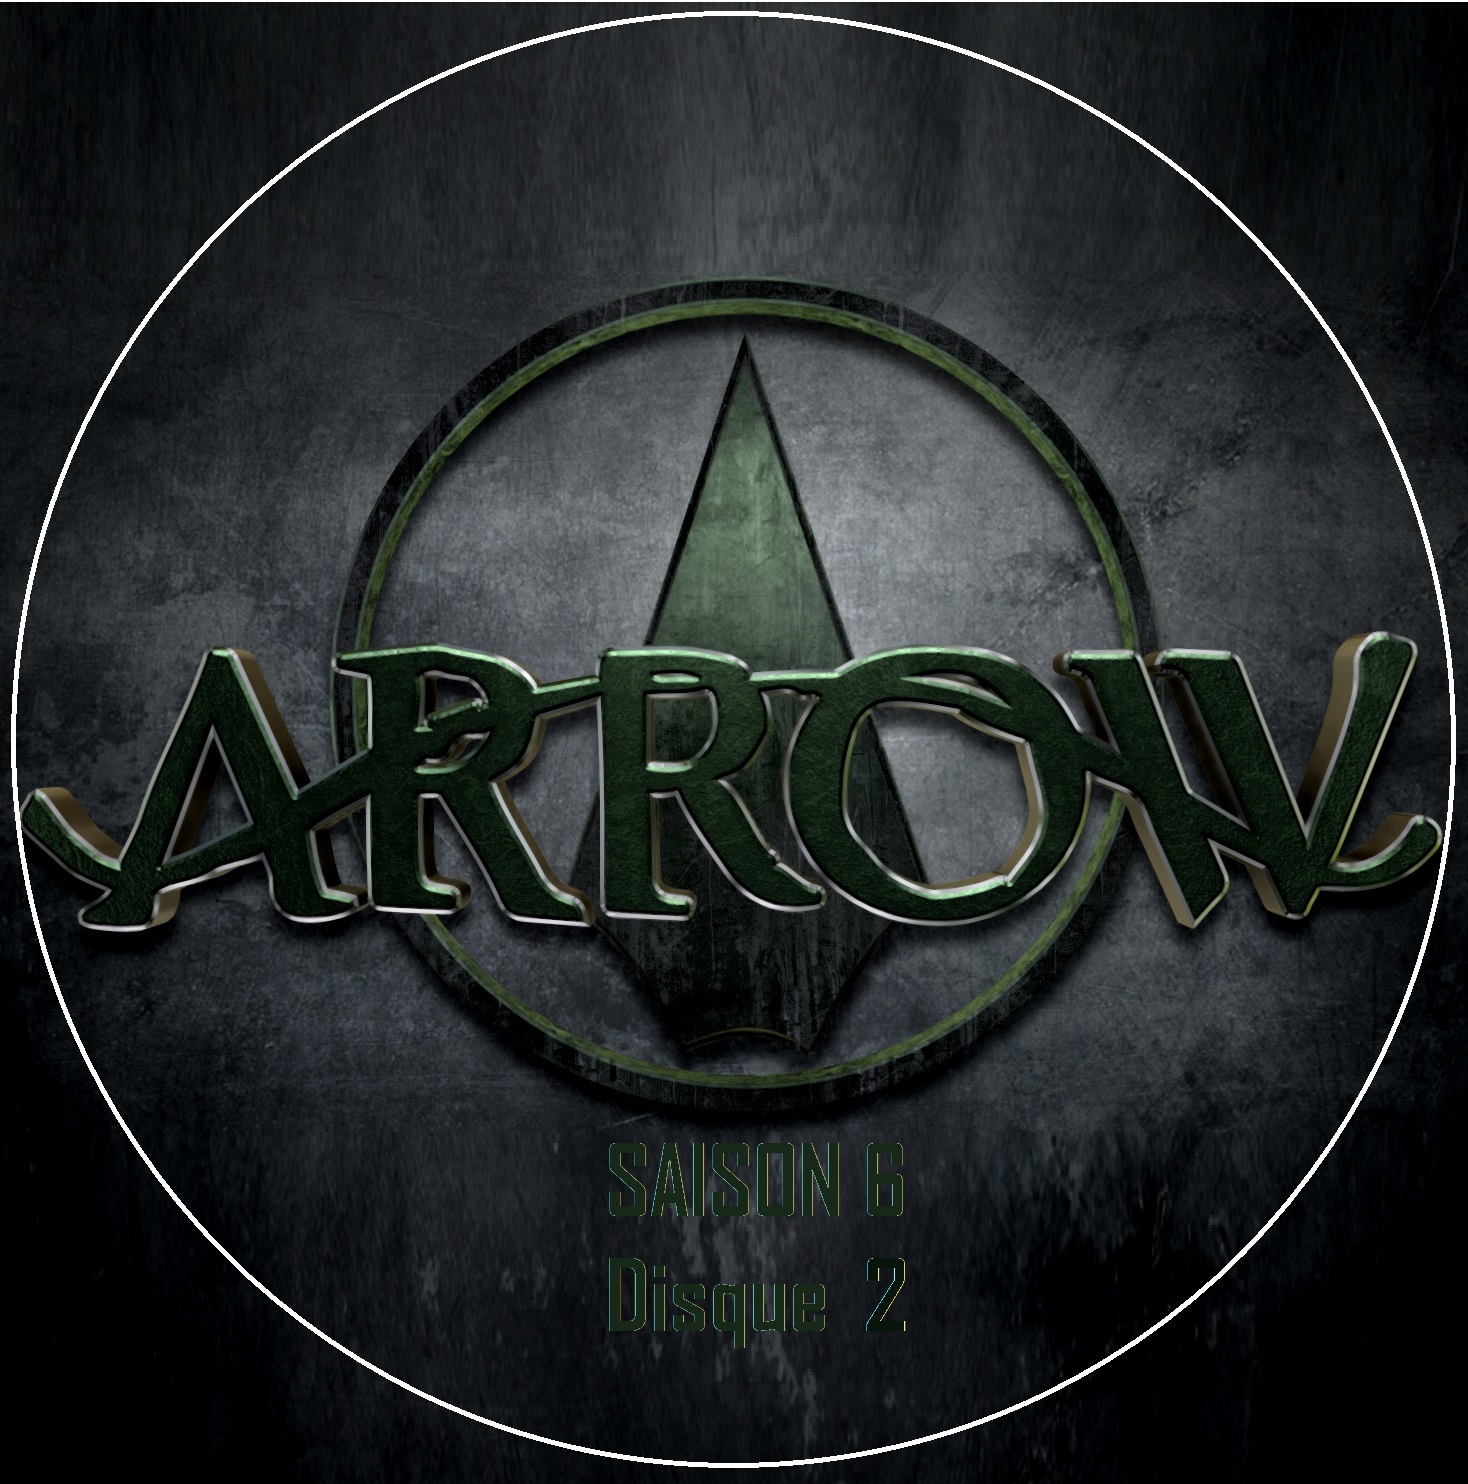 Arrow saison 6 DISC 2 custom